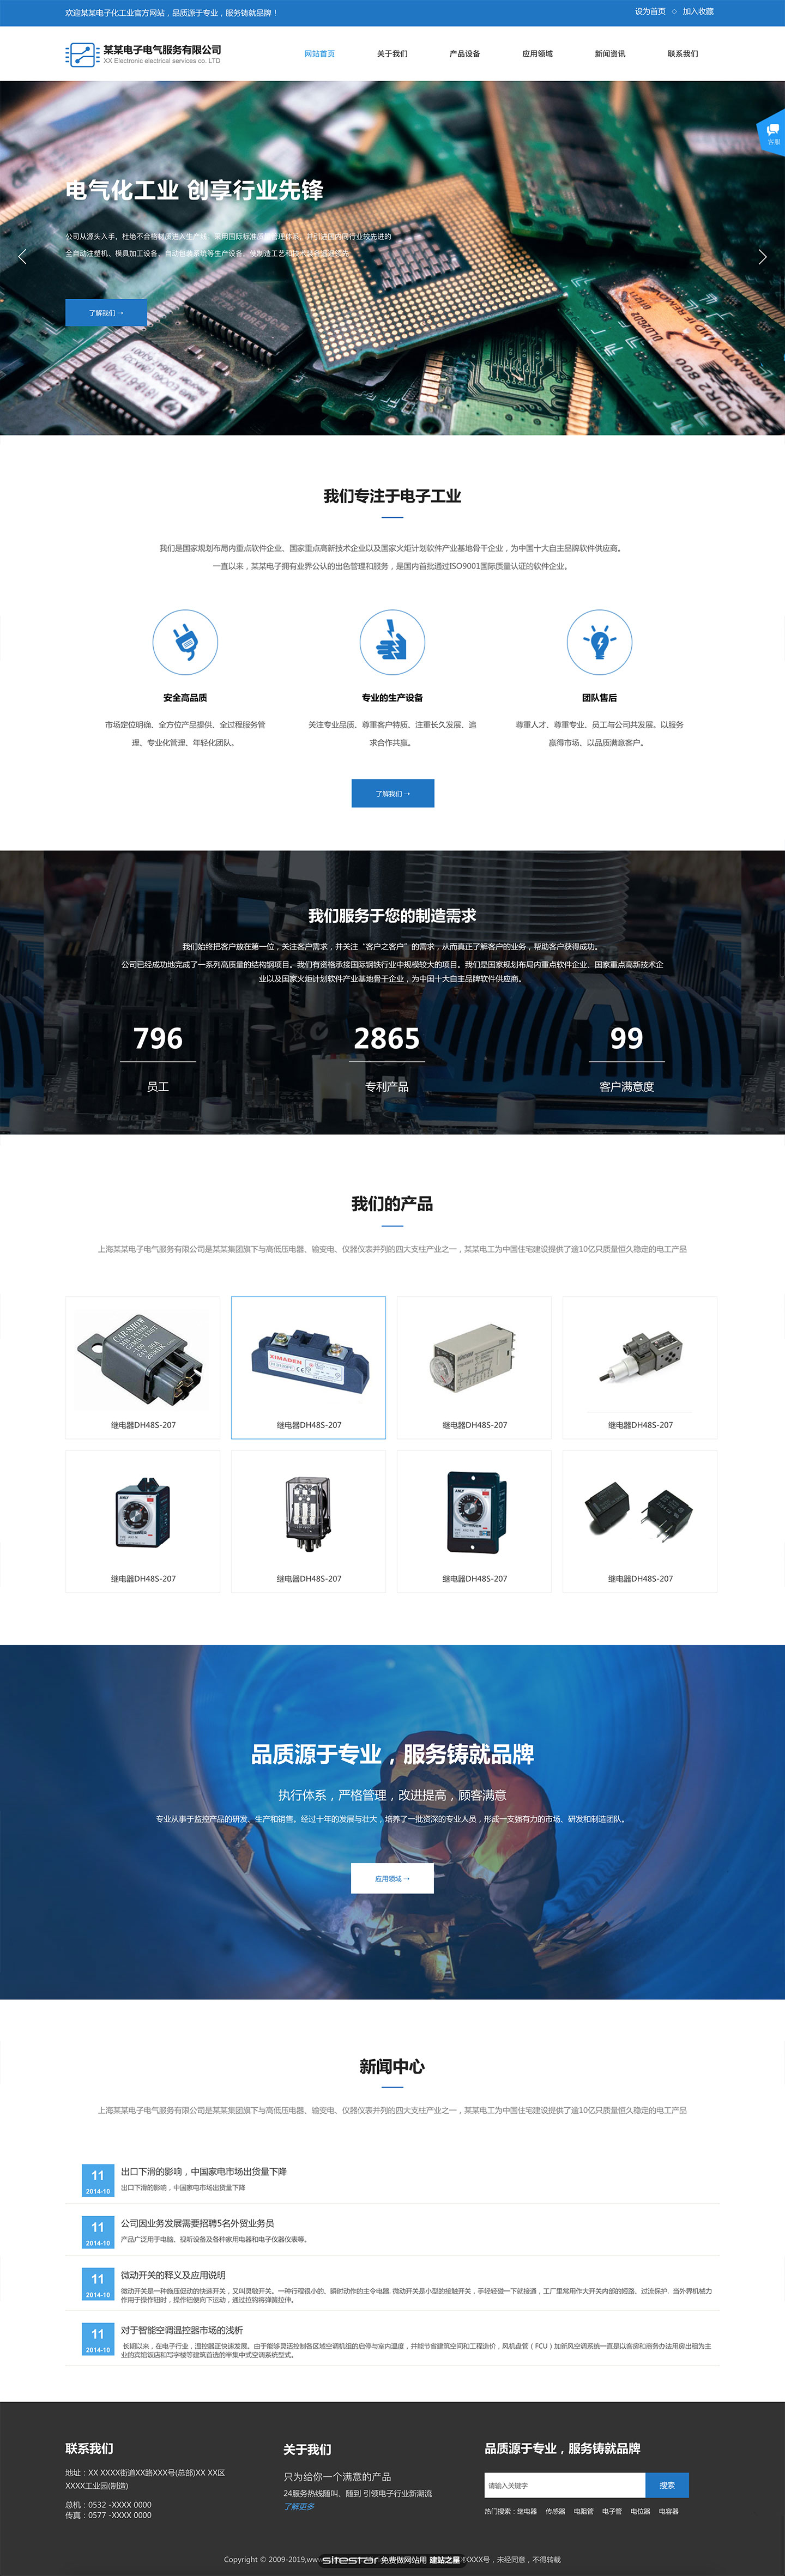 企业网站精美模板-electronics-460